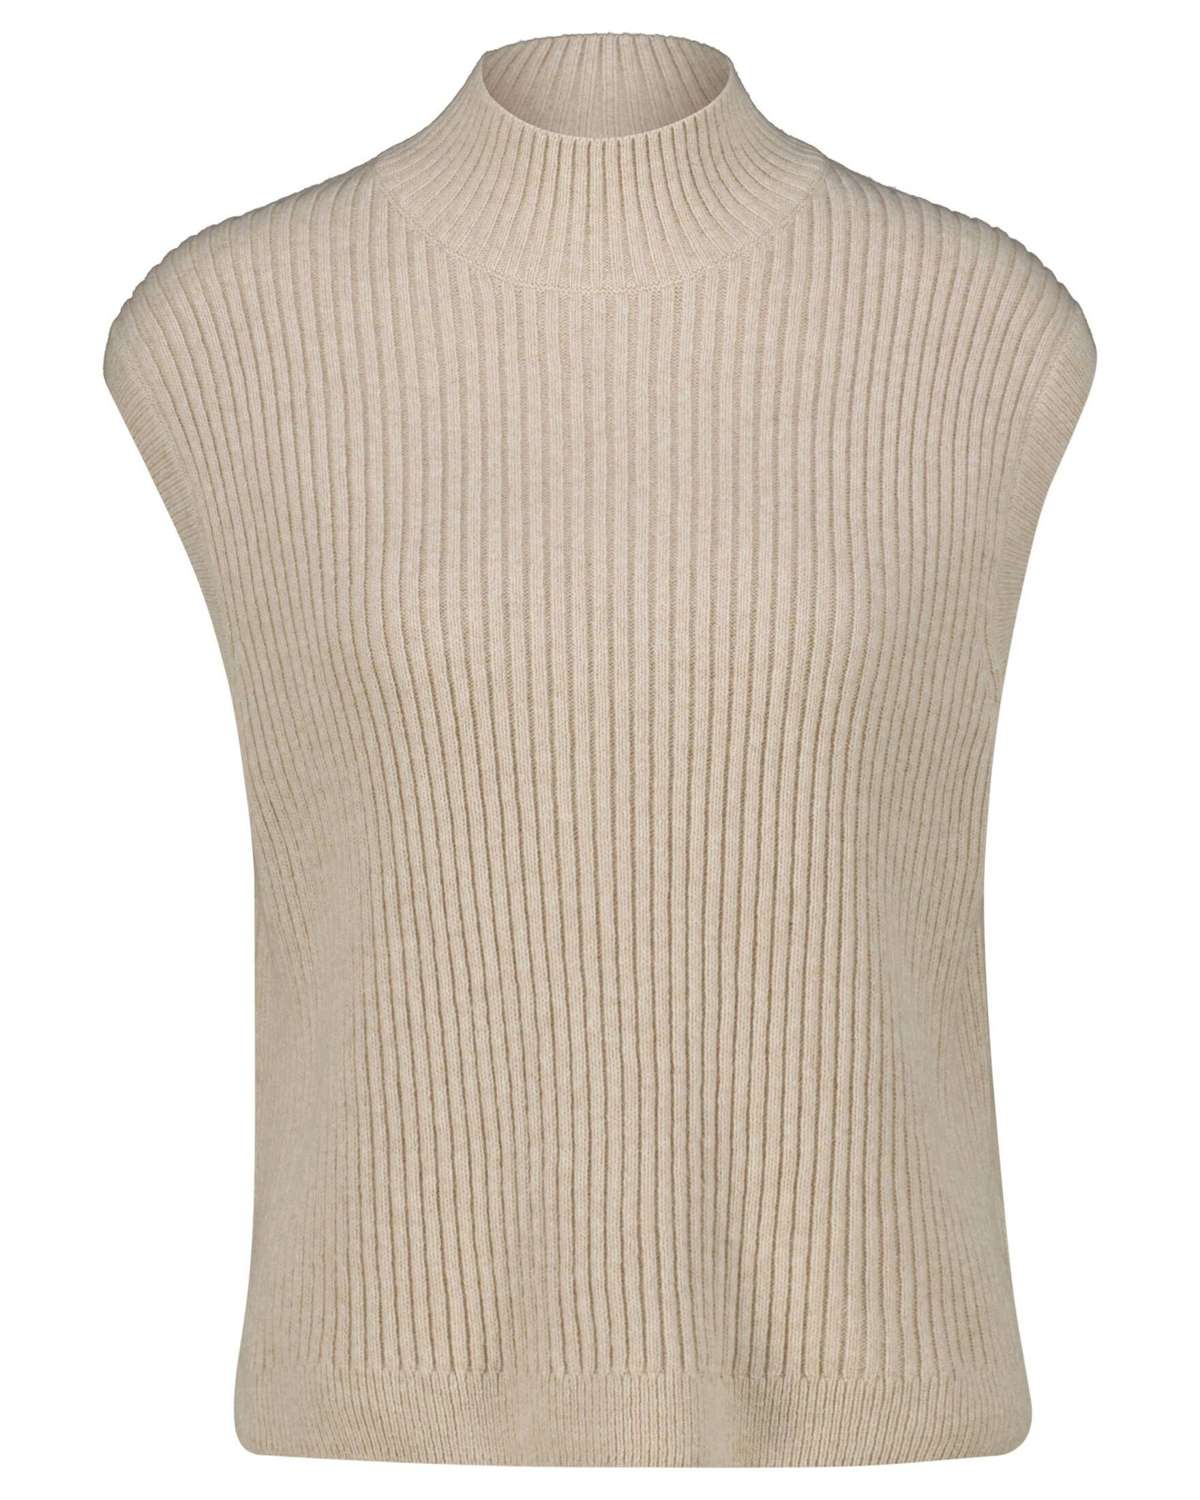 Вязаный свитер из мягкой смесовой шерсти.